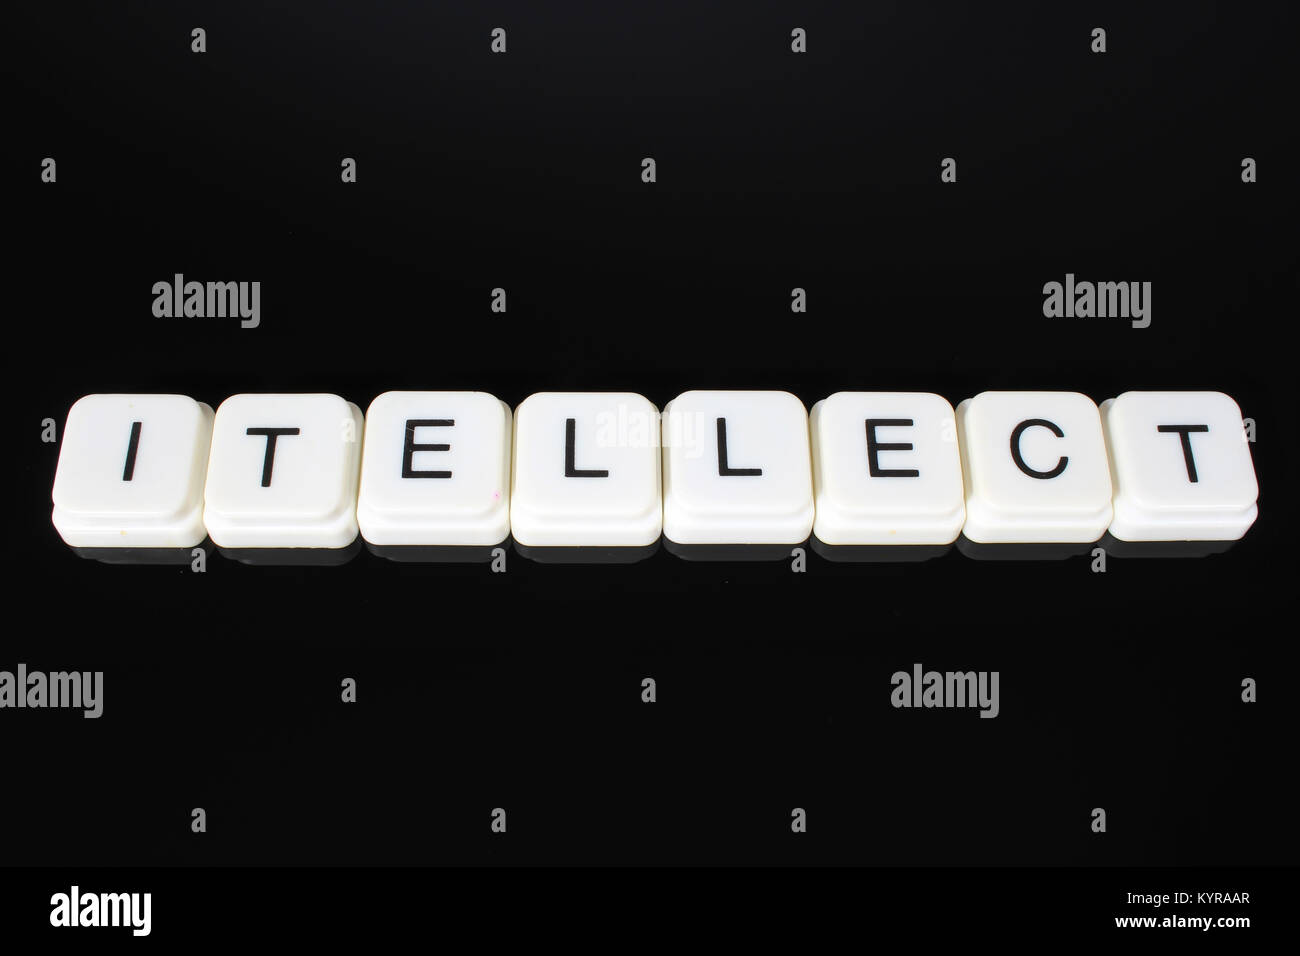 Intellekt Text Wort Titel Caption Label cover Hintergrund. Buchstaben toy Blocks auf der Schwarzen reflektierenden Hintergrund. Weiße Buchstaben. Weiß pädagogisches Spielzeug Block mit Worten auf Spiegel Tisch. Stockfoto